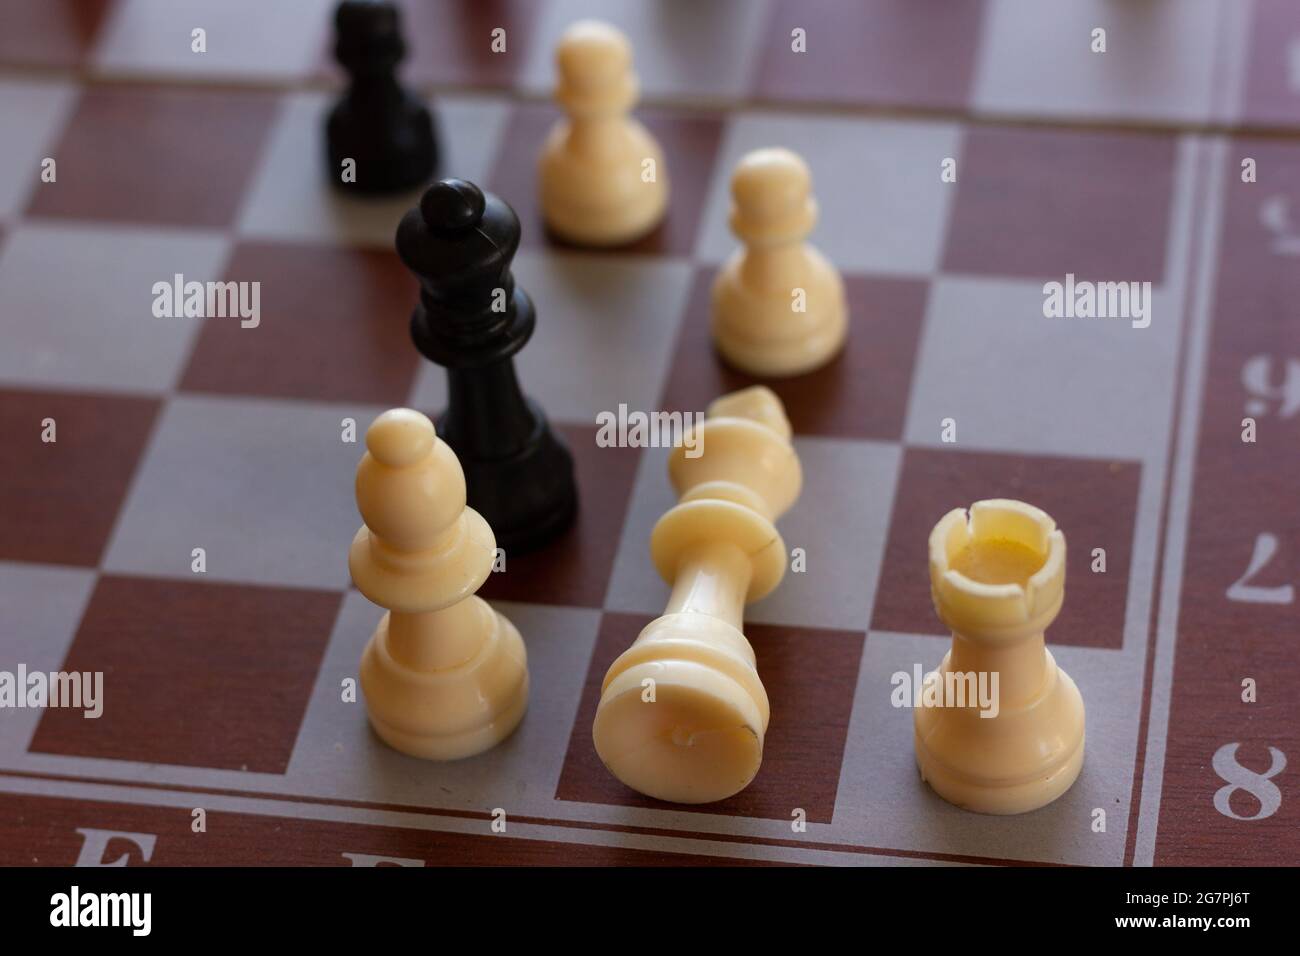 Très grand morceau blanc couché de chevêtre. Jeux d'échecs, stratégie, intelligence, victoire, concepts de défaite Banque D'Images